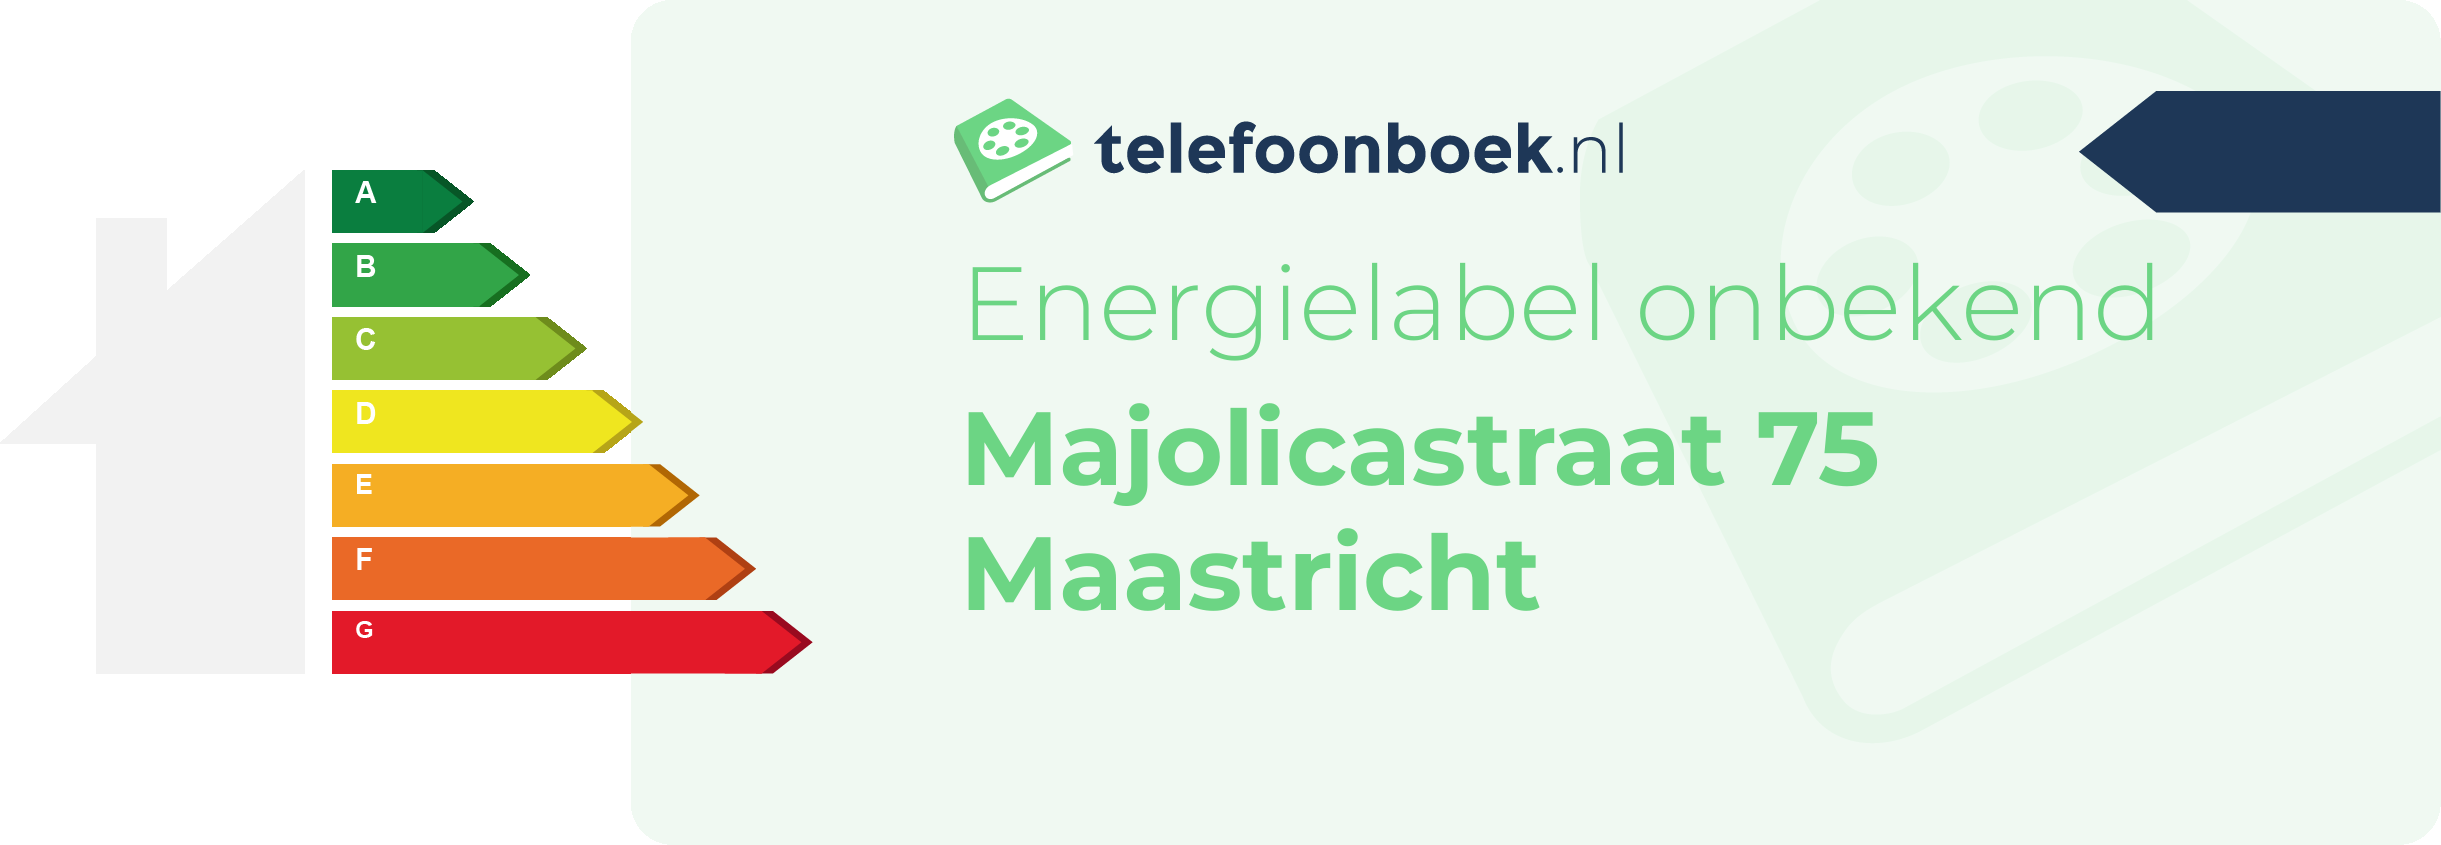 Energielabel Majolicastraat 75 Maastricht